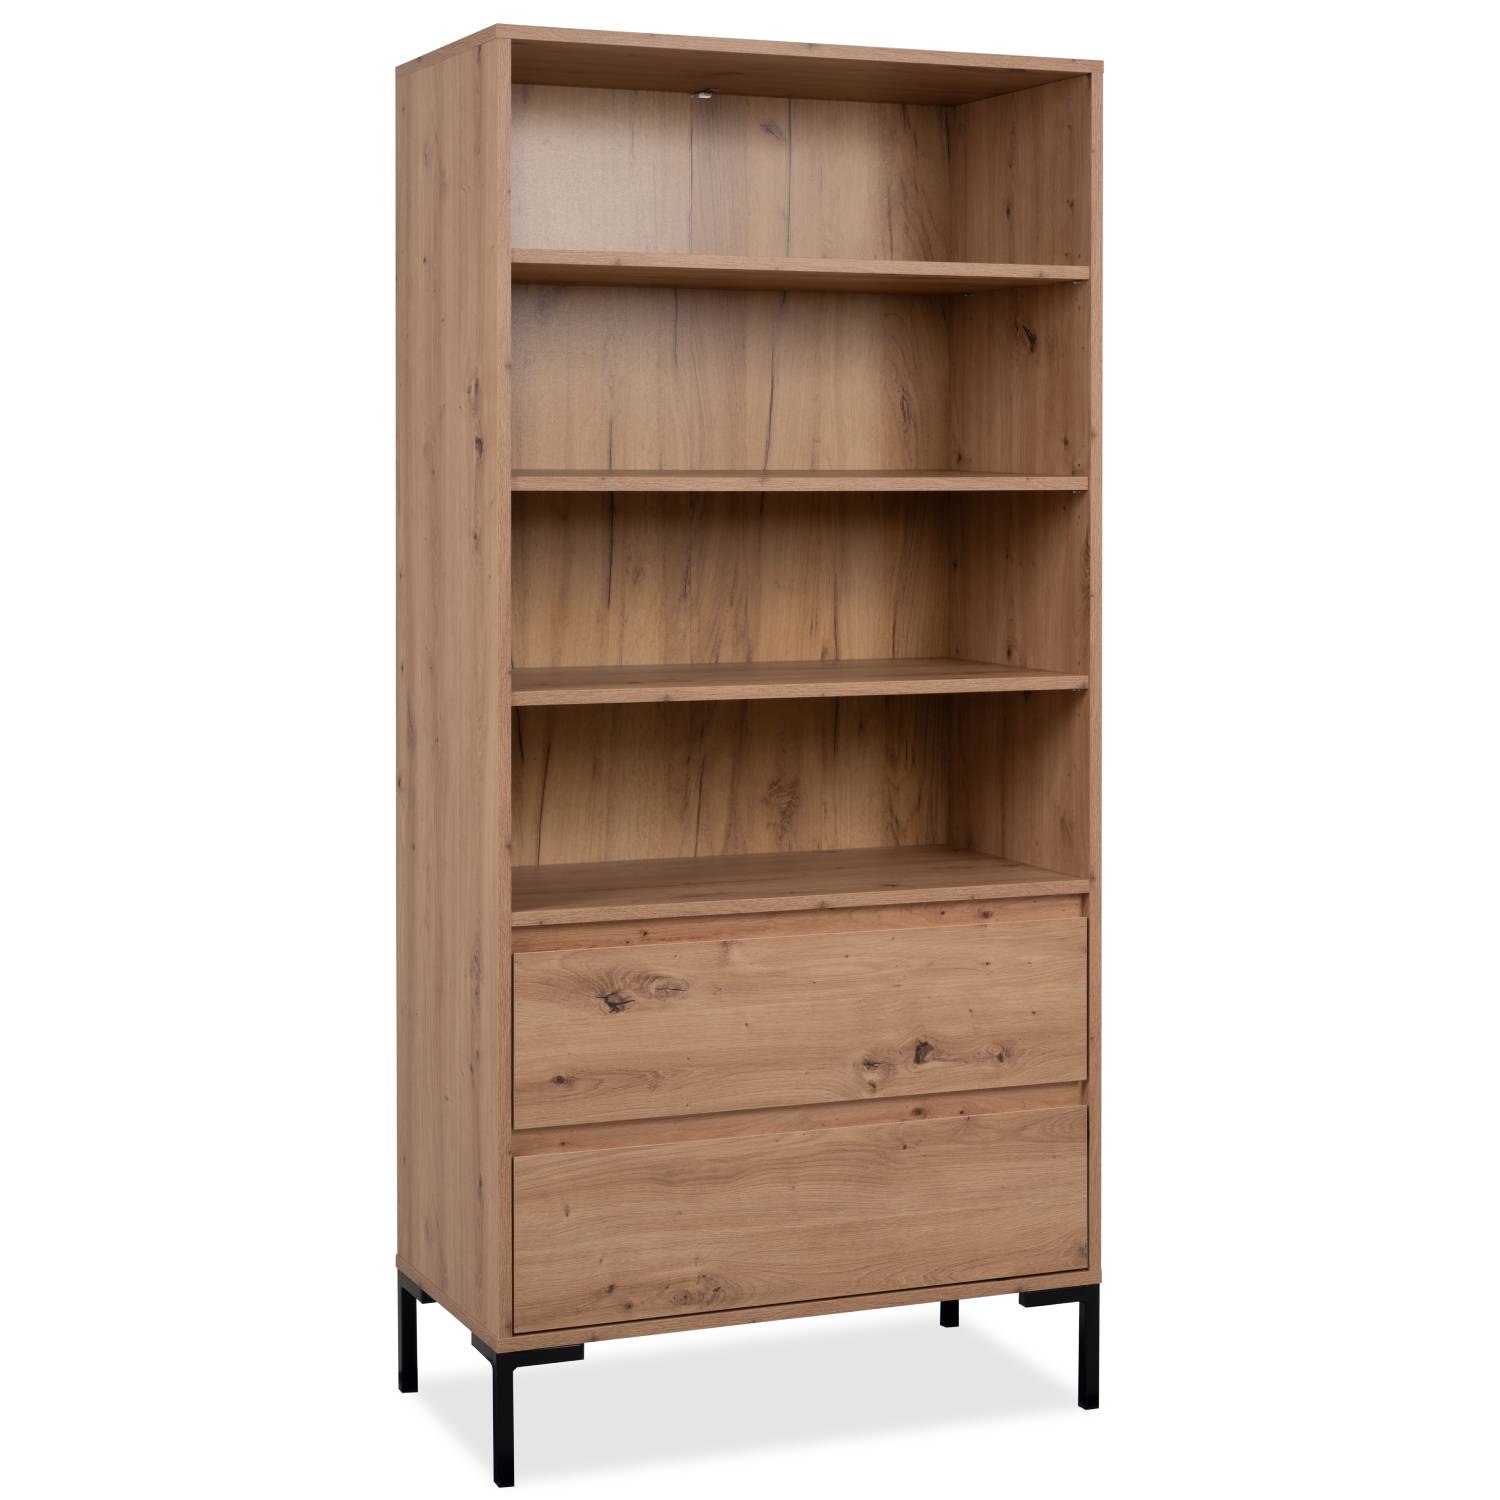 Shelf Bookcase 77.5 cm Industrial Design Highboard Wall Unit Metal Black Wood Oak Office Cabinet